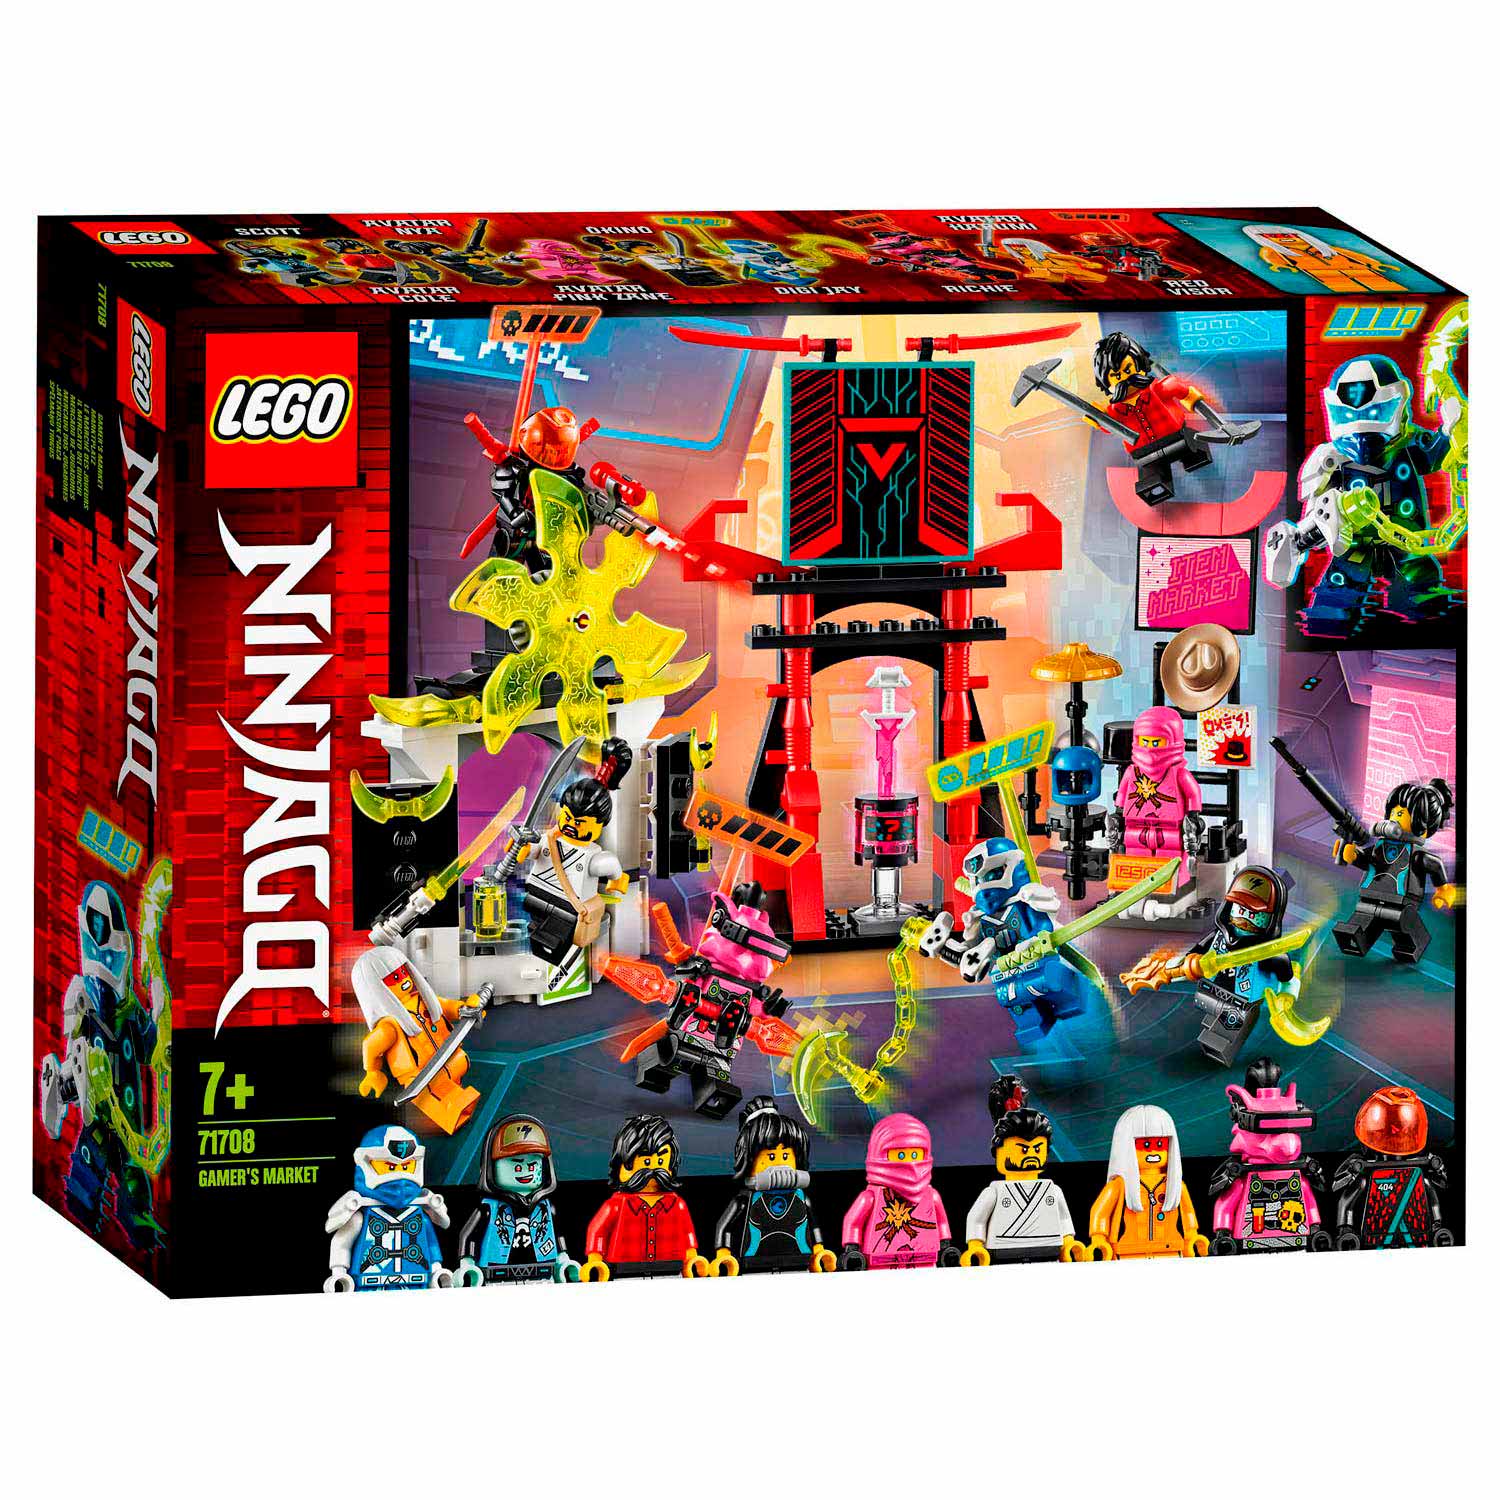 LEGO Ninjago 71708 Gamer's Markt